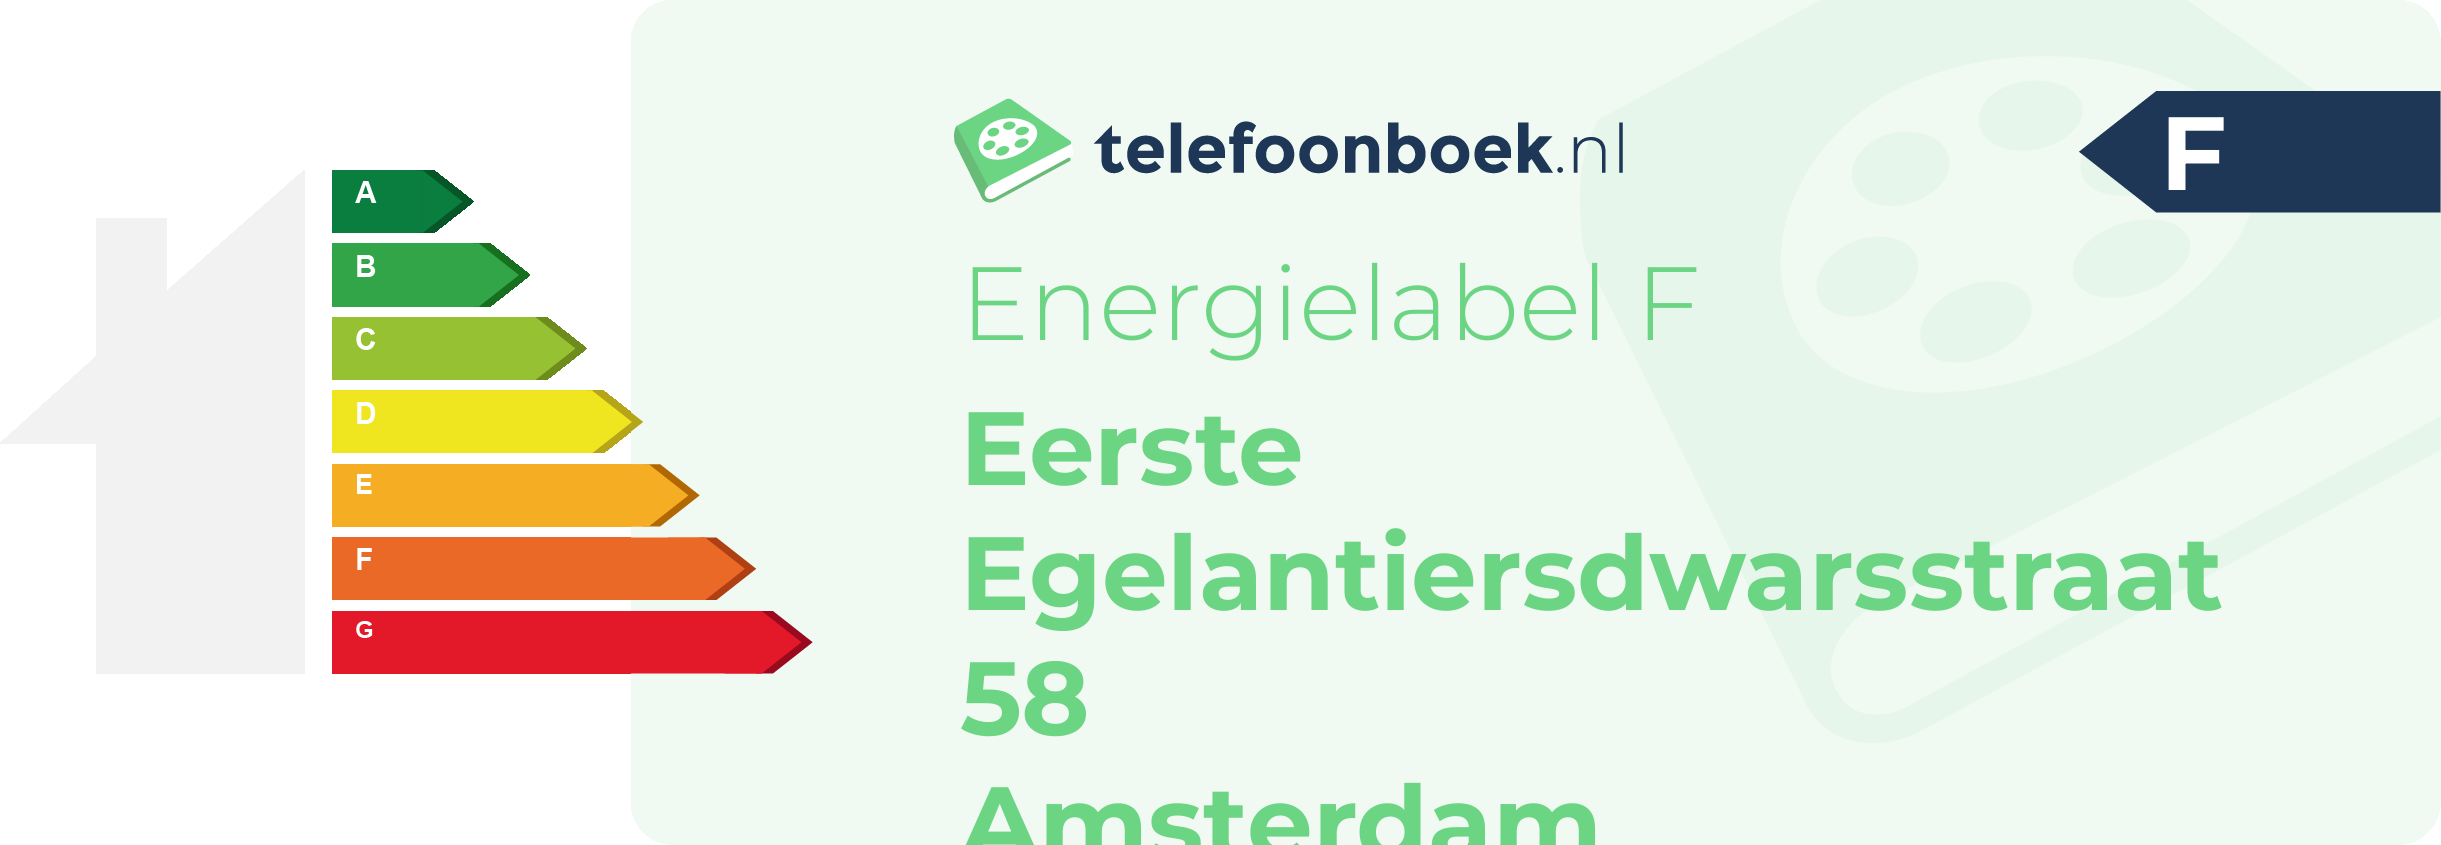 Energielabel Eerste Egelantiersdwarsstraat 58 Amsterdam